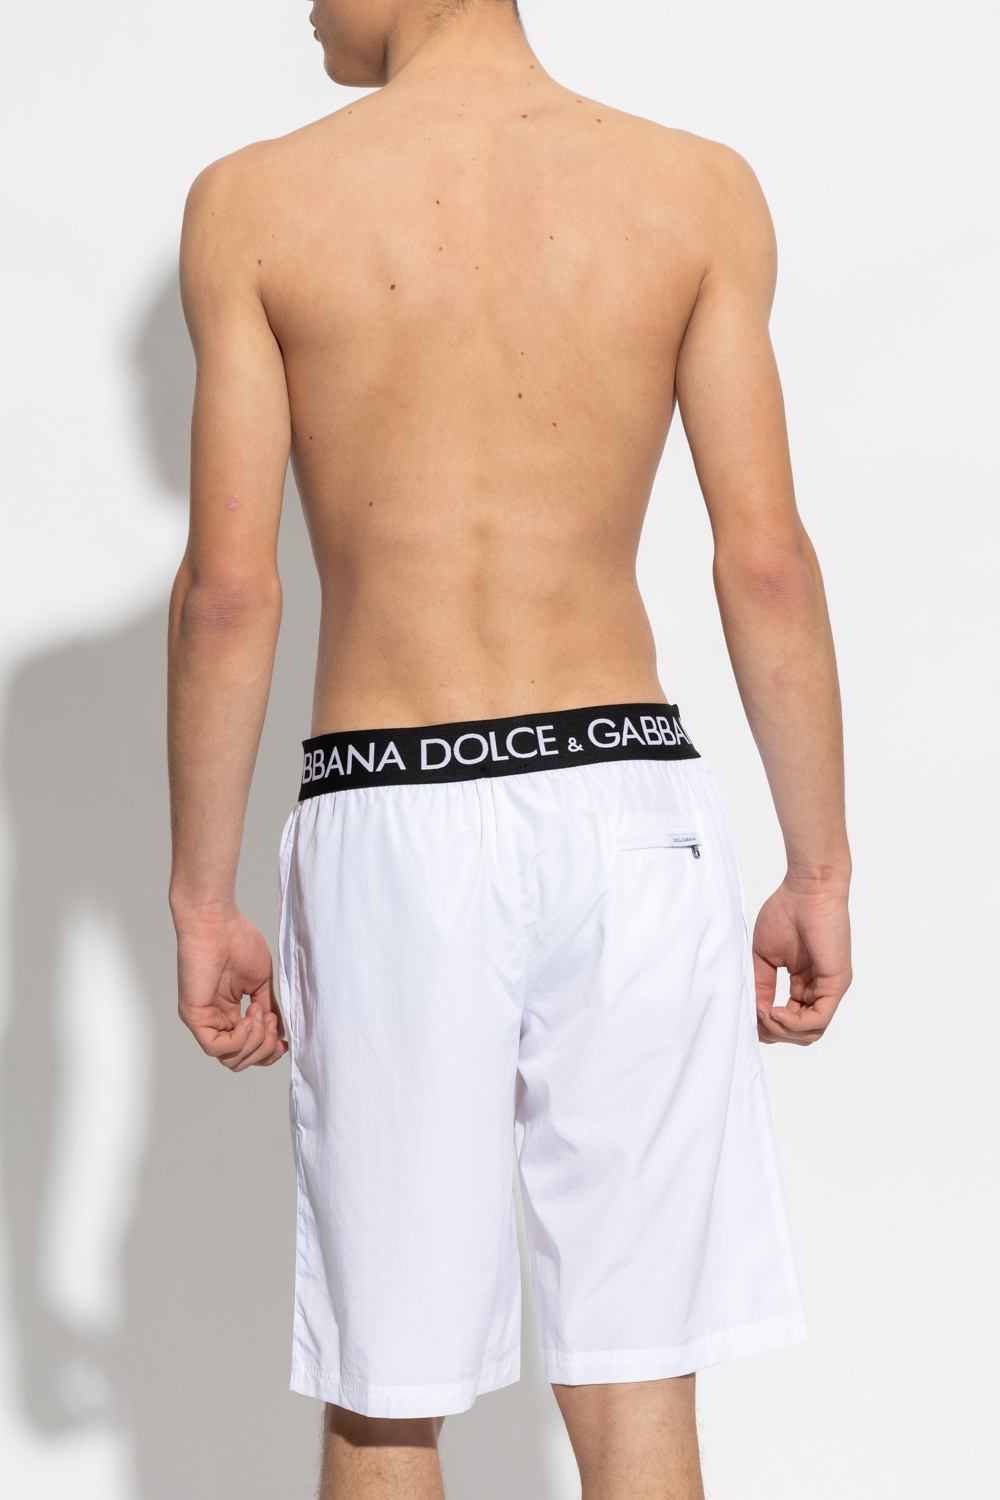 Dolce & Gabbana Stiefeletten mit DG-Absatz Schwarz Swimming shorts